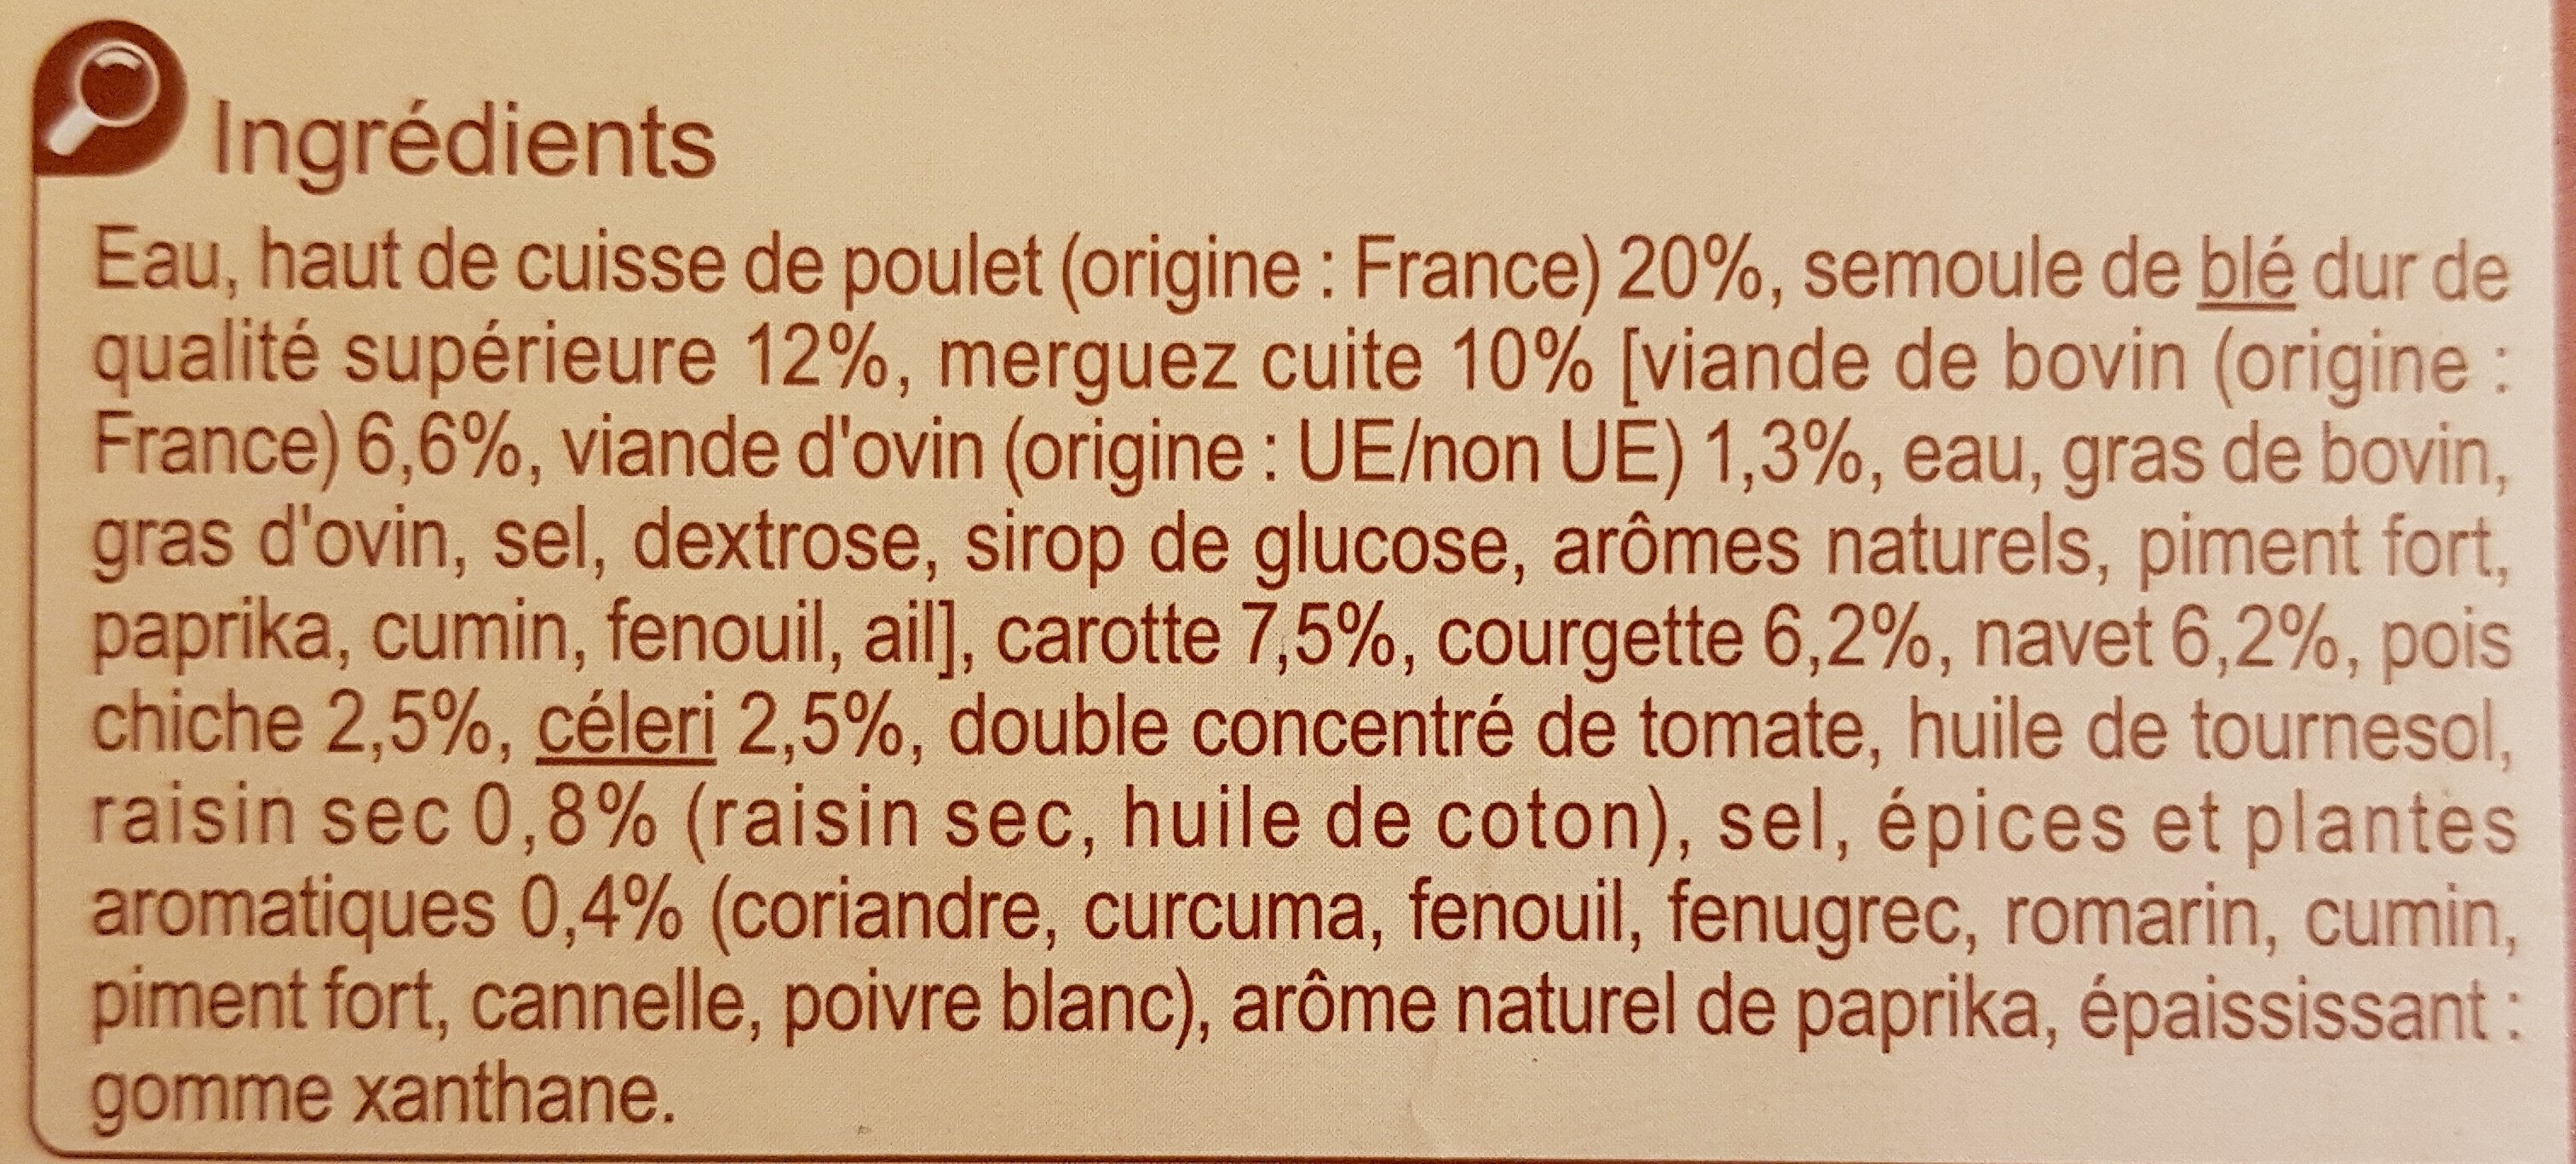 Couscous Poulet Merguez - Ingredients - fr